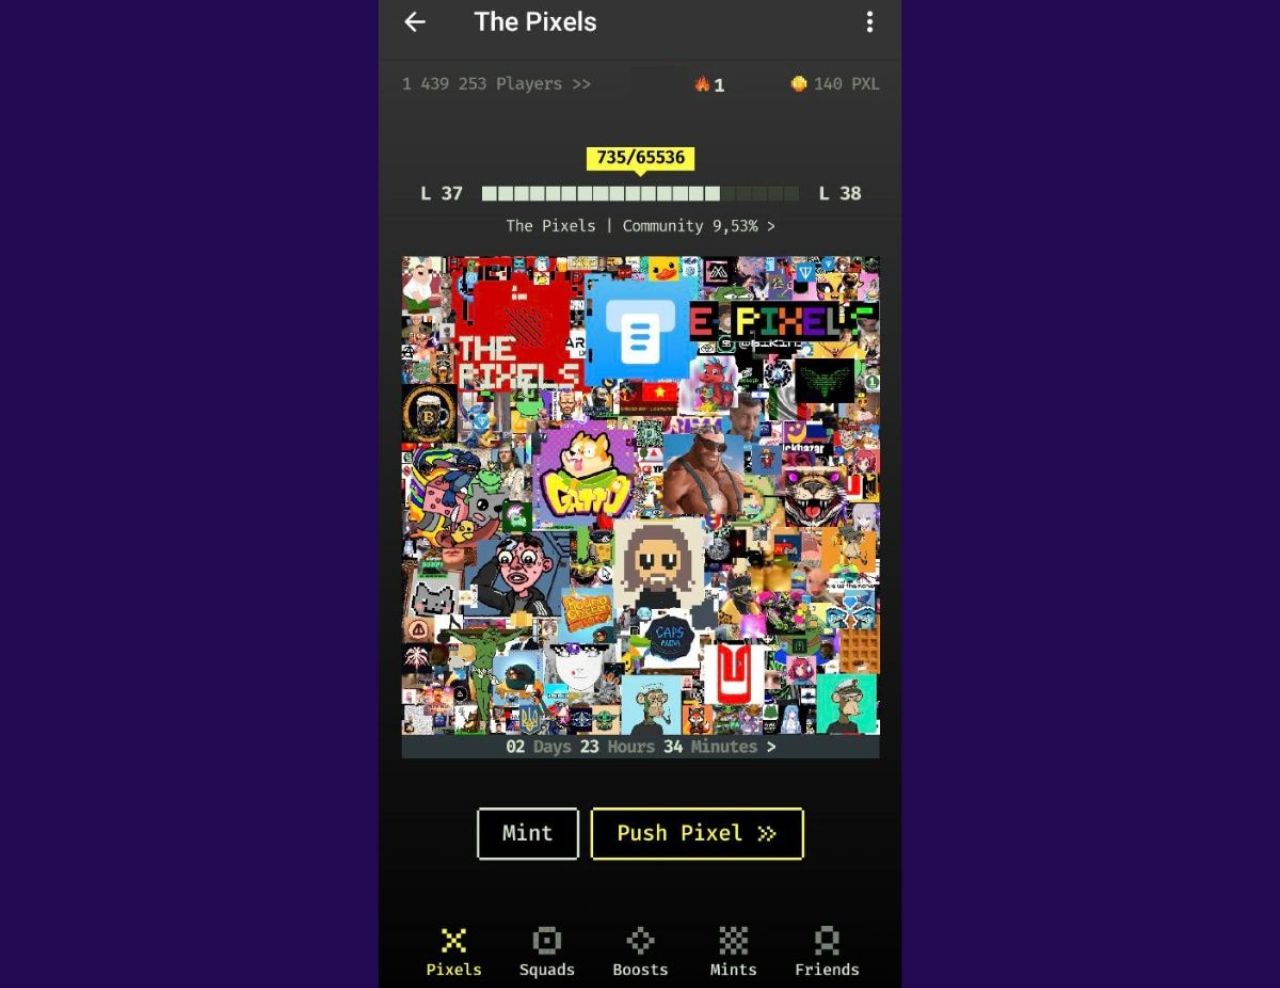 The Pixels - Game trên Mini-App của Telegram đã thu hút gần 1.5 triệu người chơi